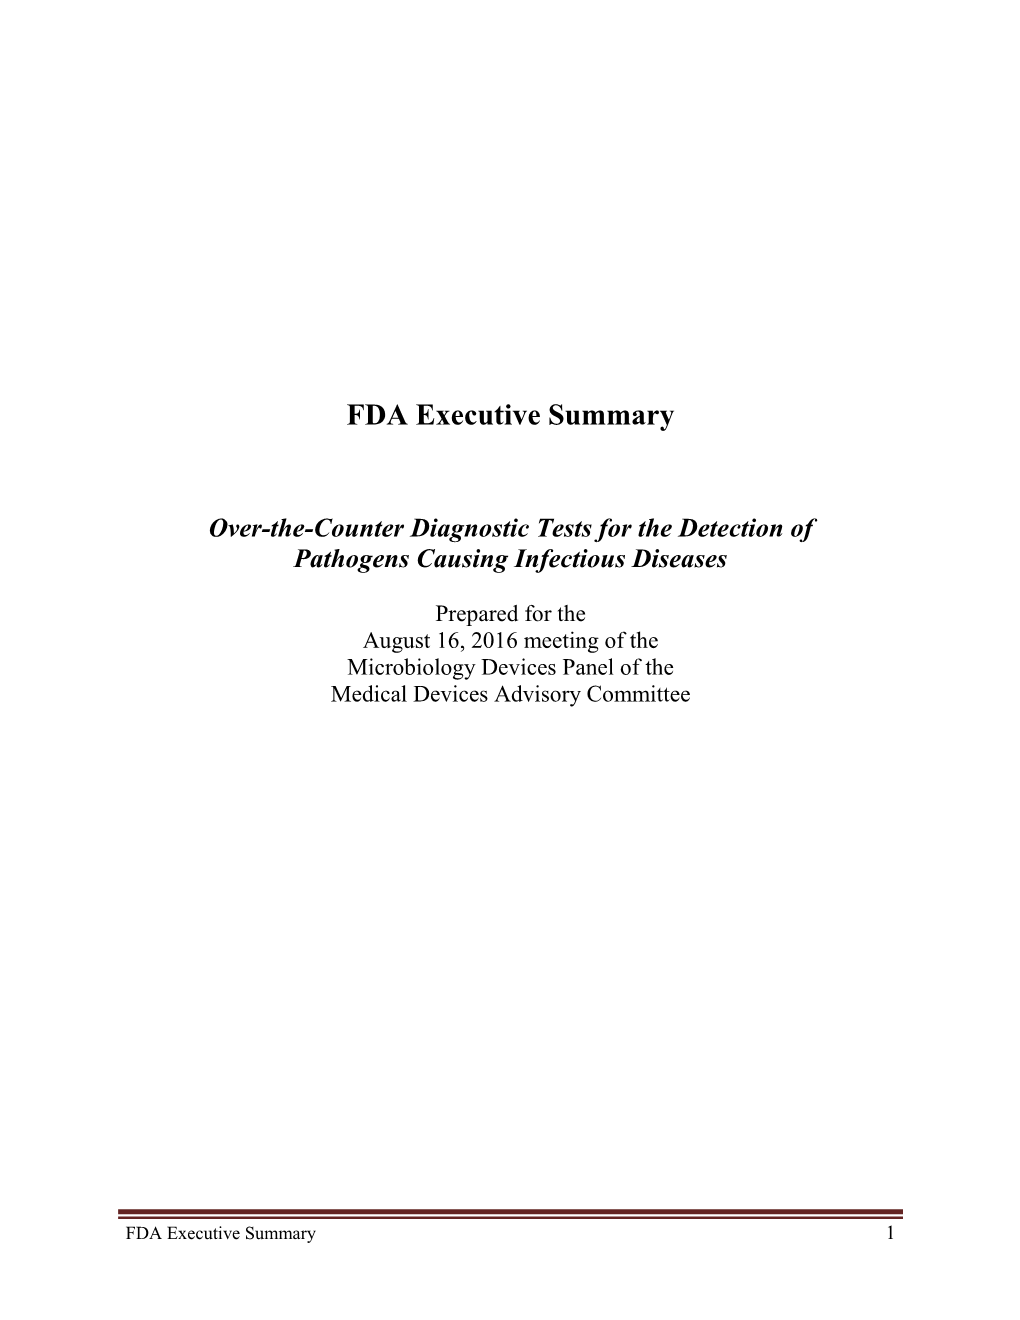 FDA Executive Summary: August 16, 2016